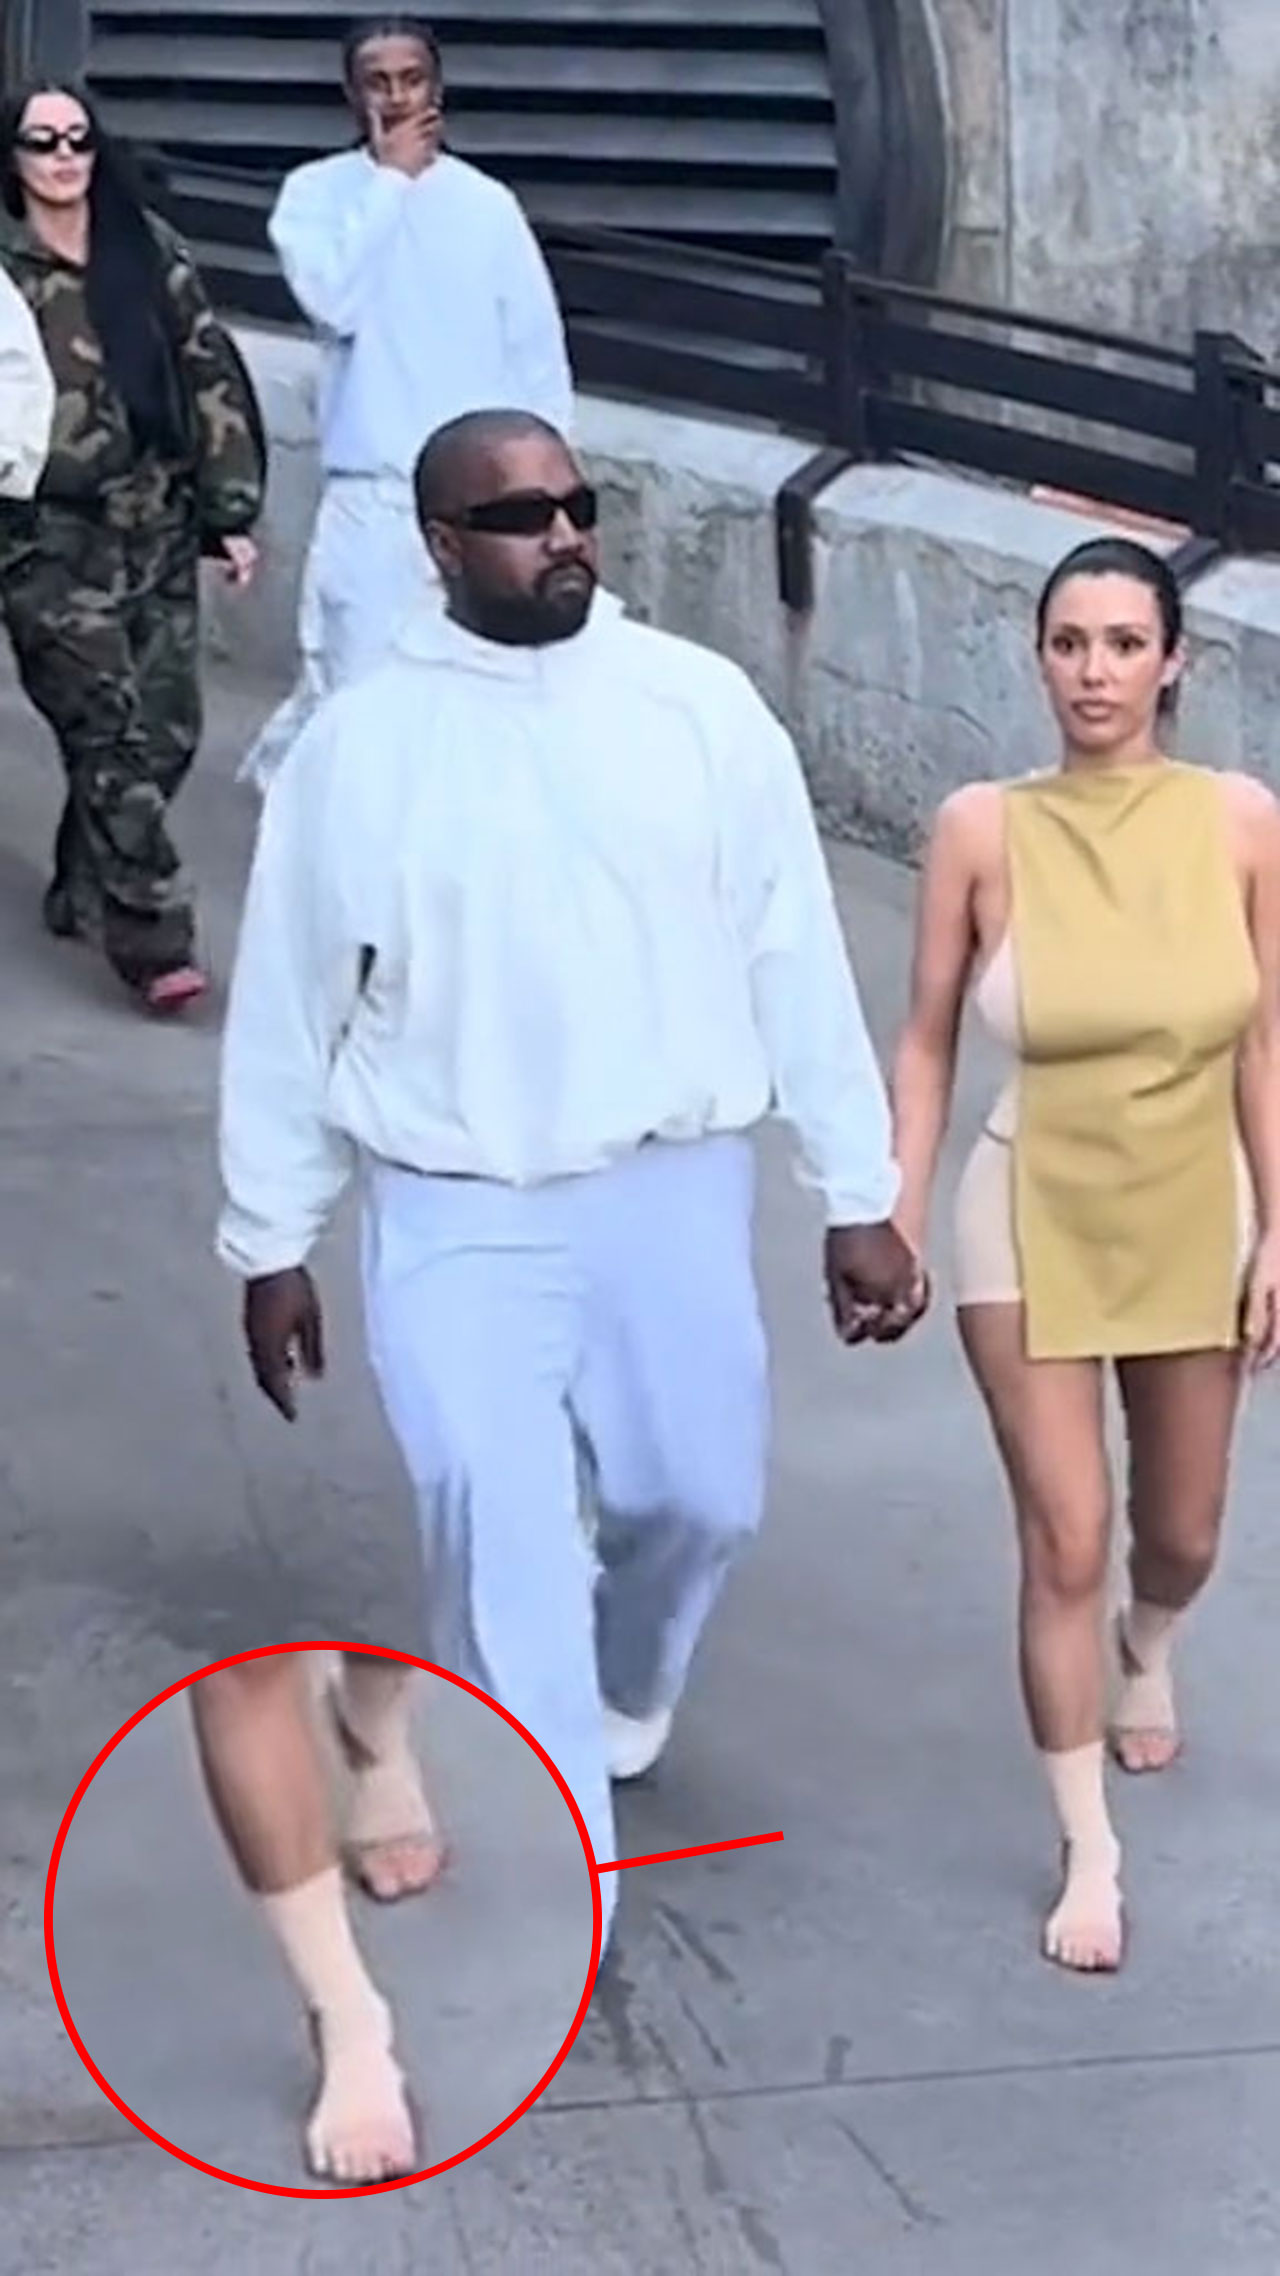 Kanye West and Bianca Censori Disneyland feet ankles bandaged